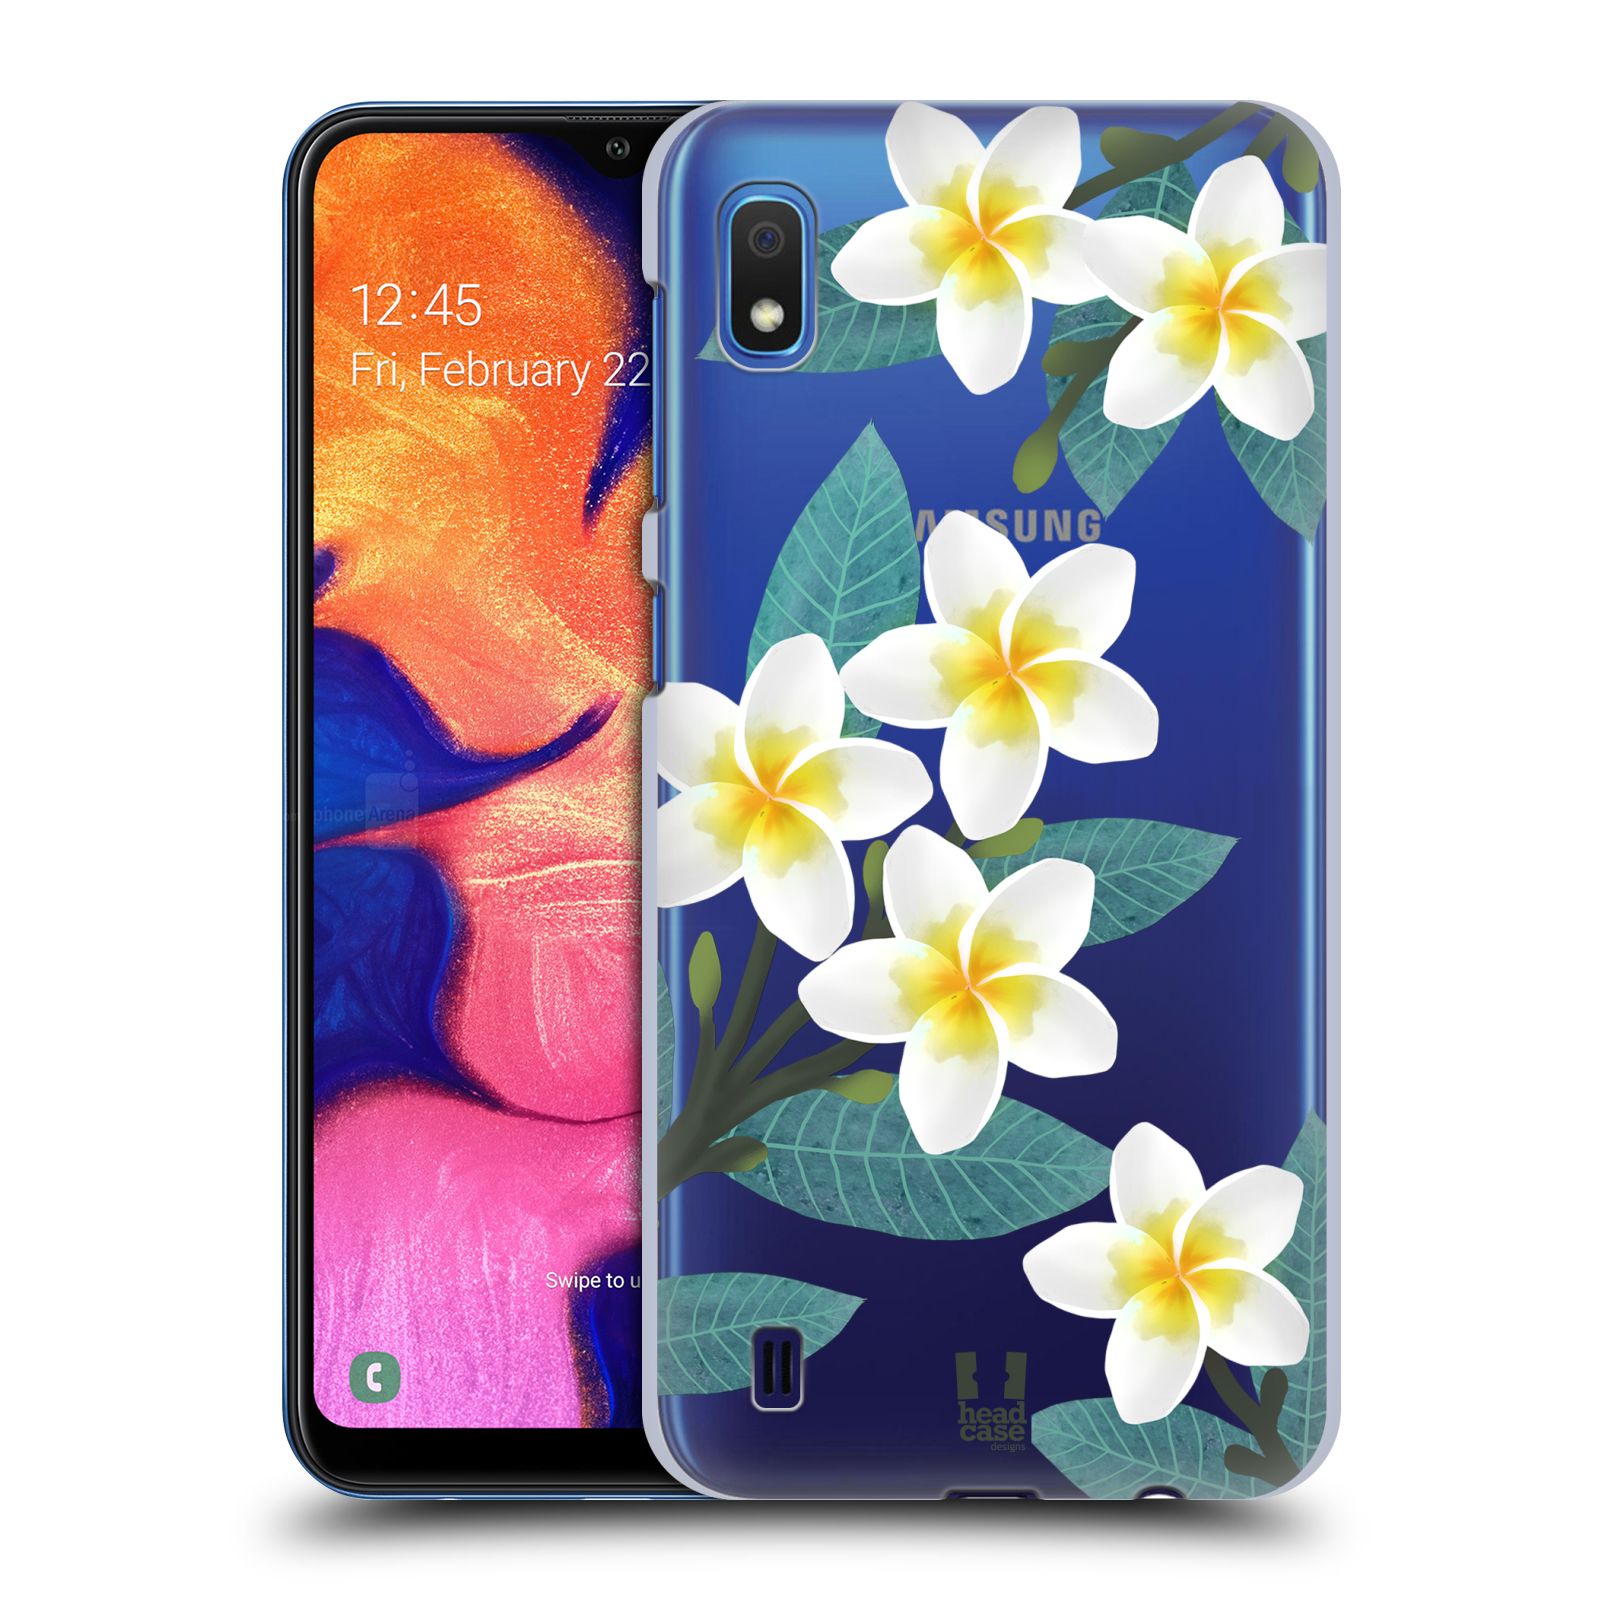 Pouzdro na mobil Samsung Galaxy A10 - HEAD CASE - květinové vzory Plumérie